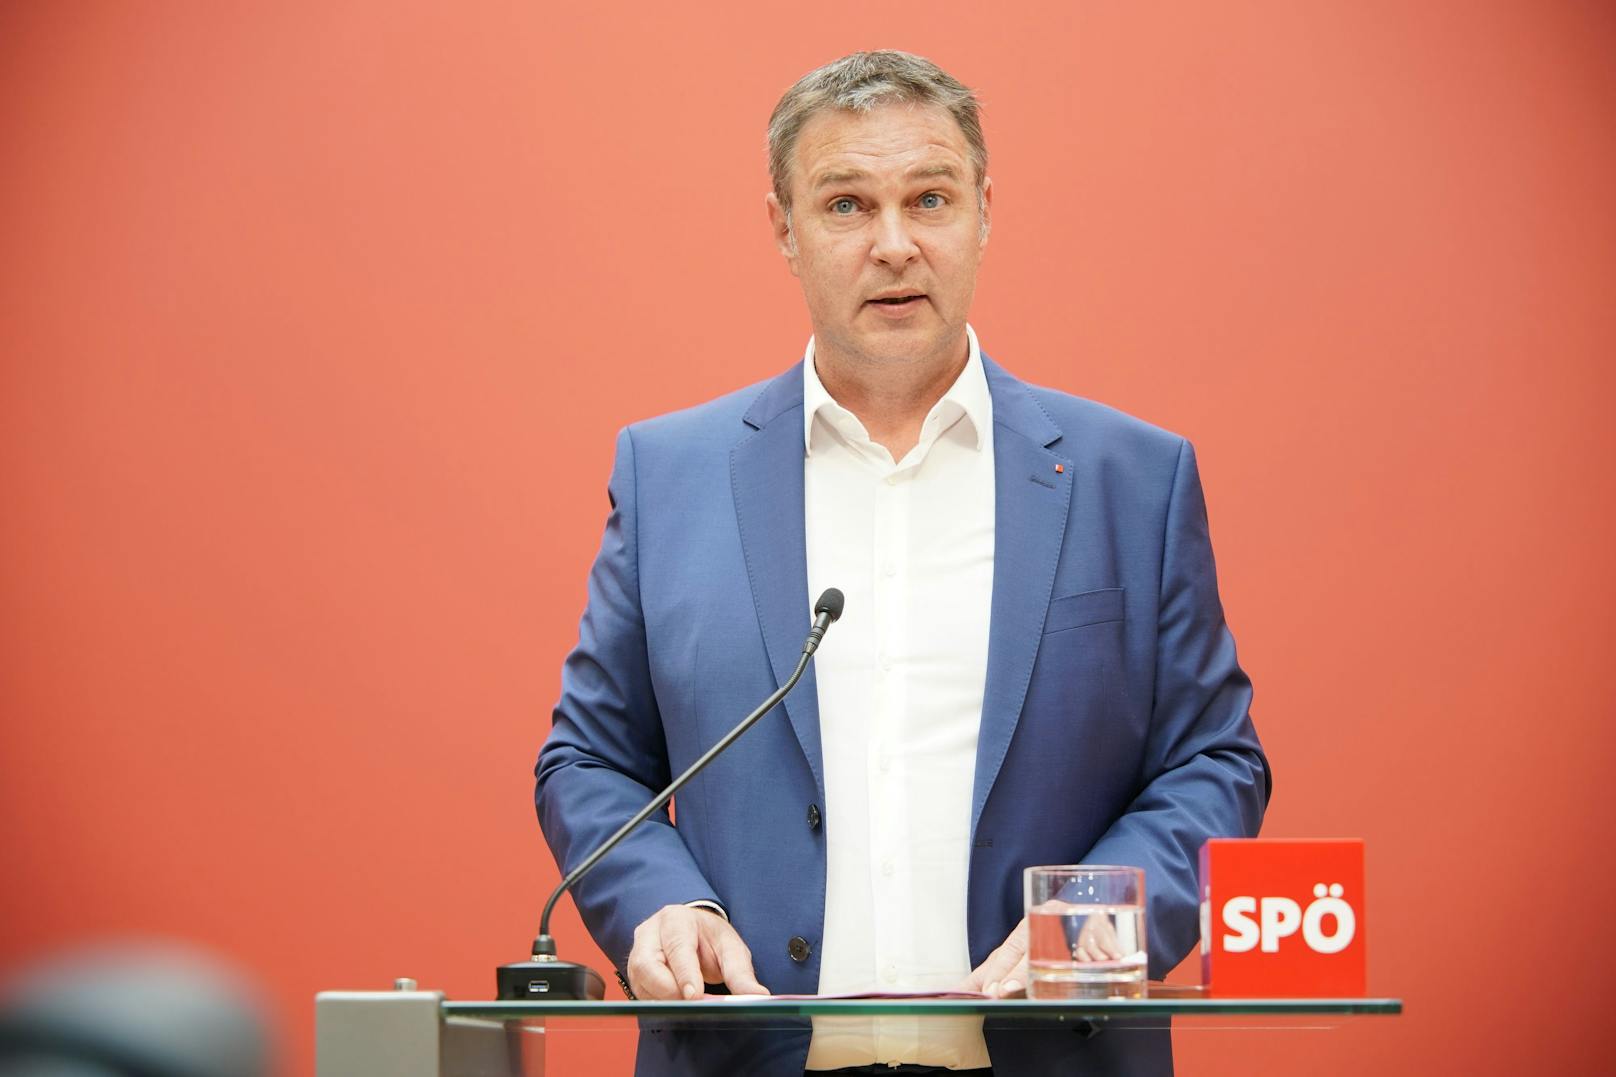 Er hielt am Dienstag seine erste Rede als neuer SPÖ-Parteichef.